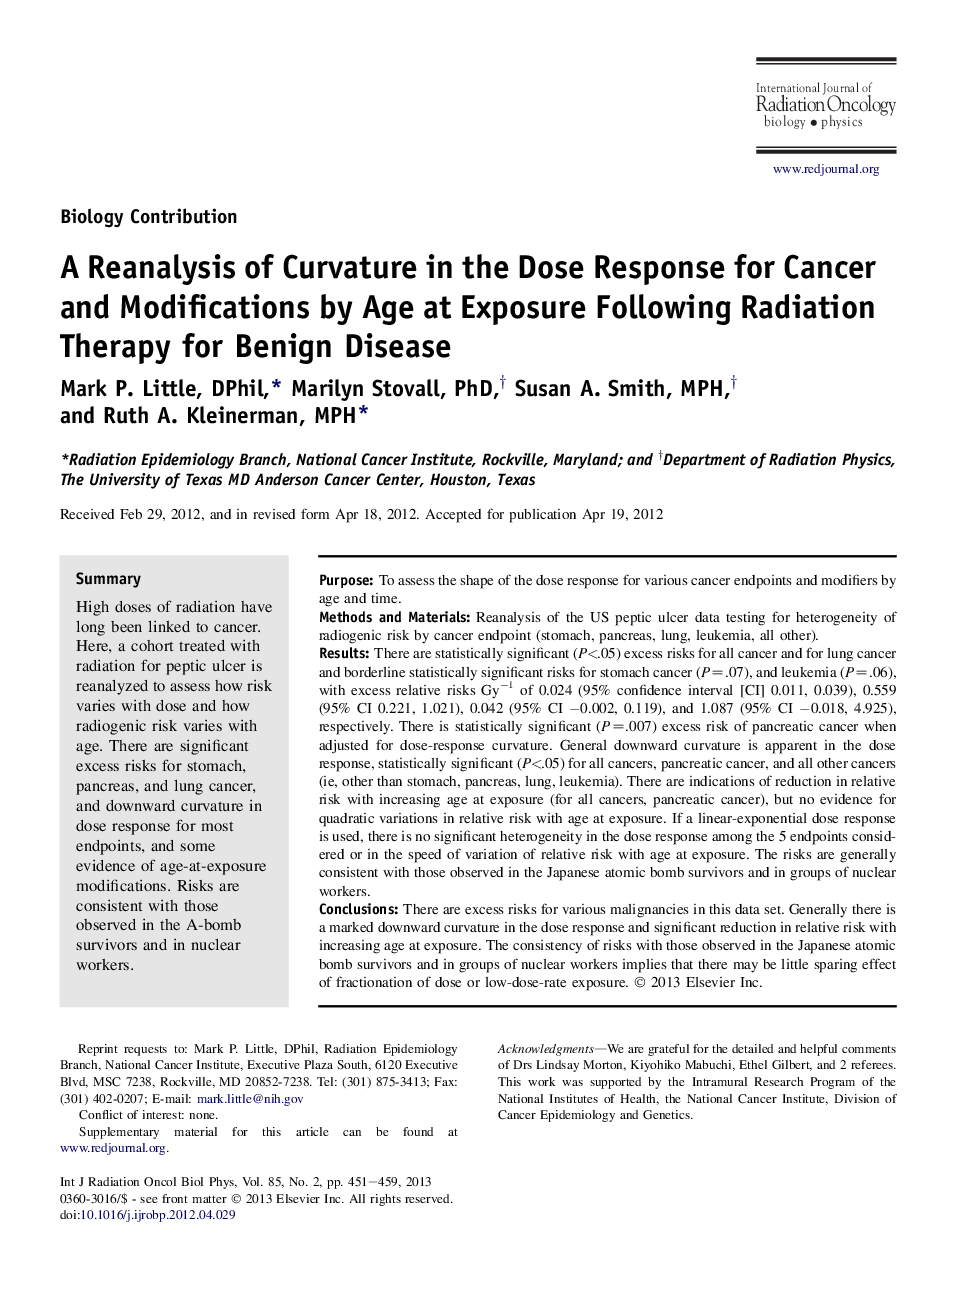 بازنگری انحنای در پاسخ دز برای سرطان و تغییرات توسط سن در معرض پس از درمان رادیوتراپی برای بیماری خوش خیم 